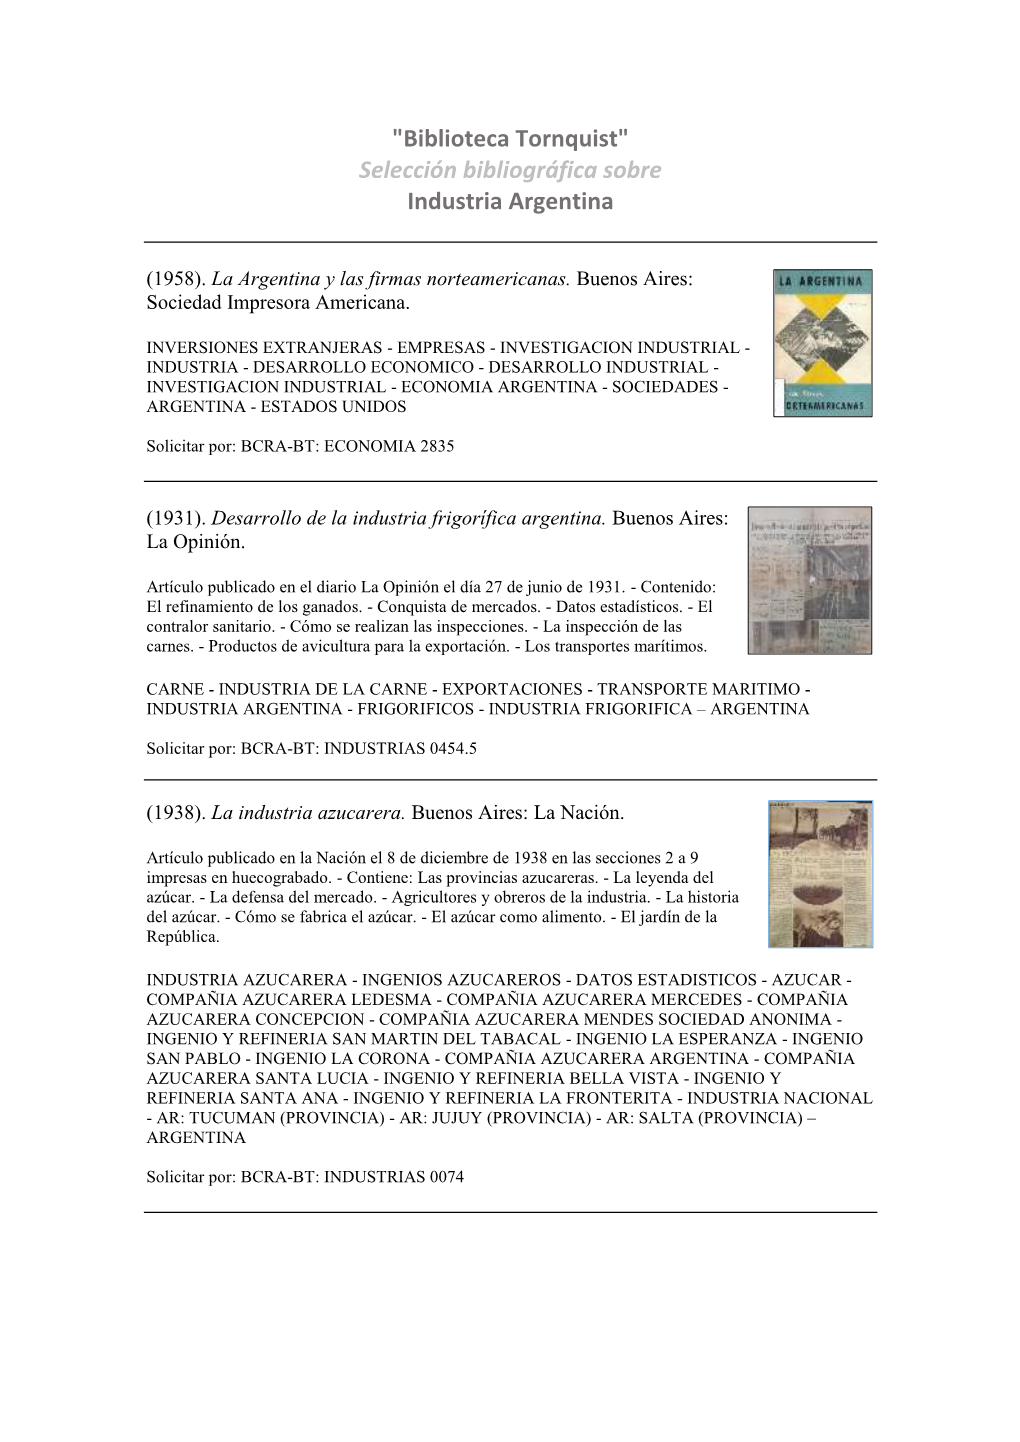 "Biblioteca Tornquist" Selección Bibliográfica Sobre Industria Argentina